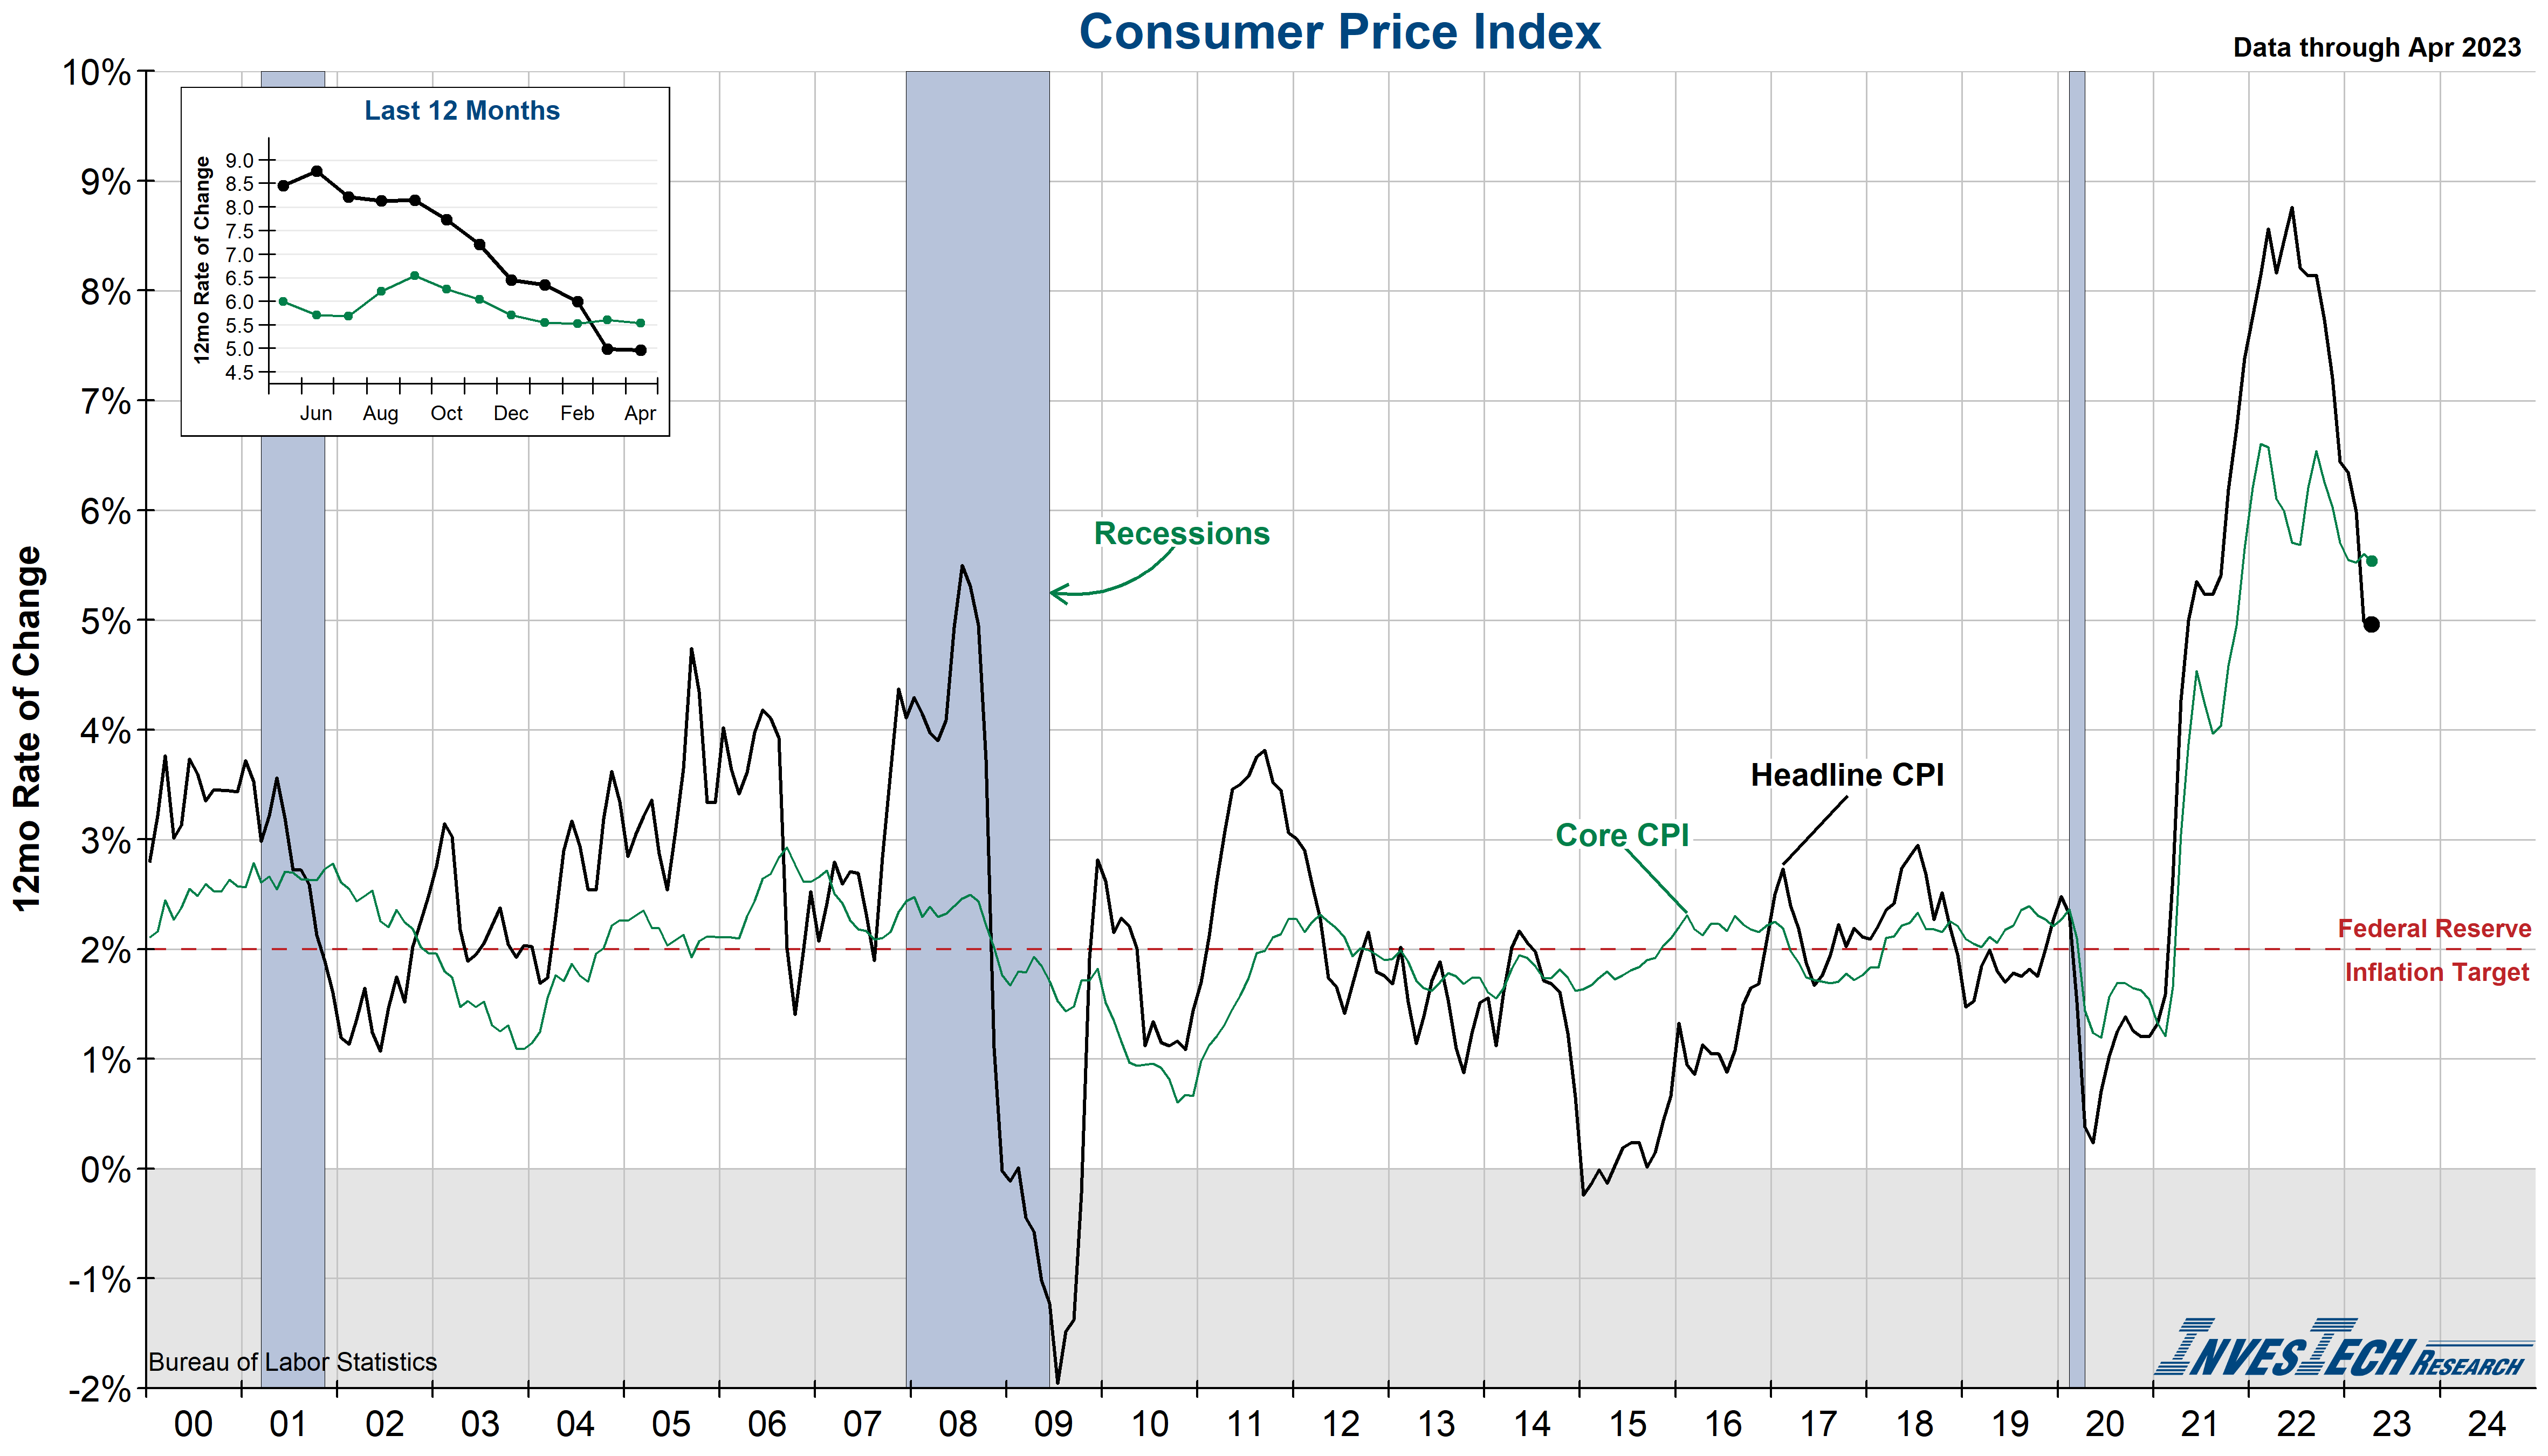 Consumer Price Index (CPI)